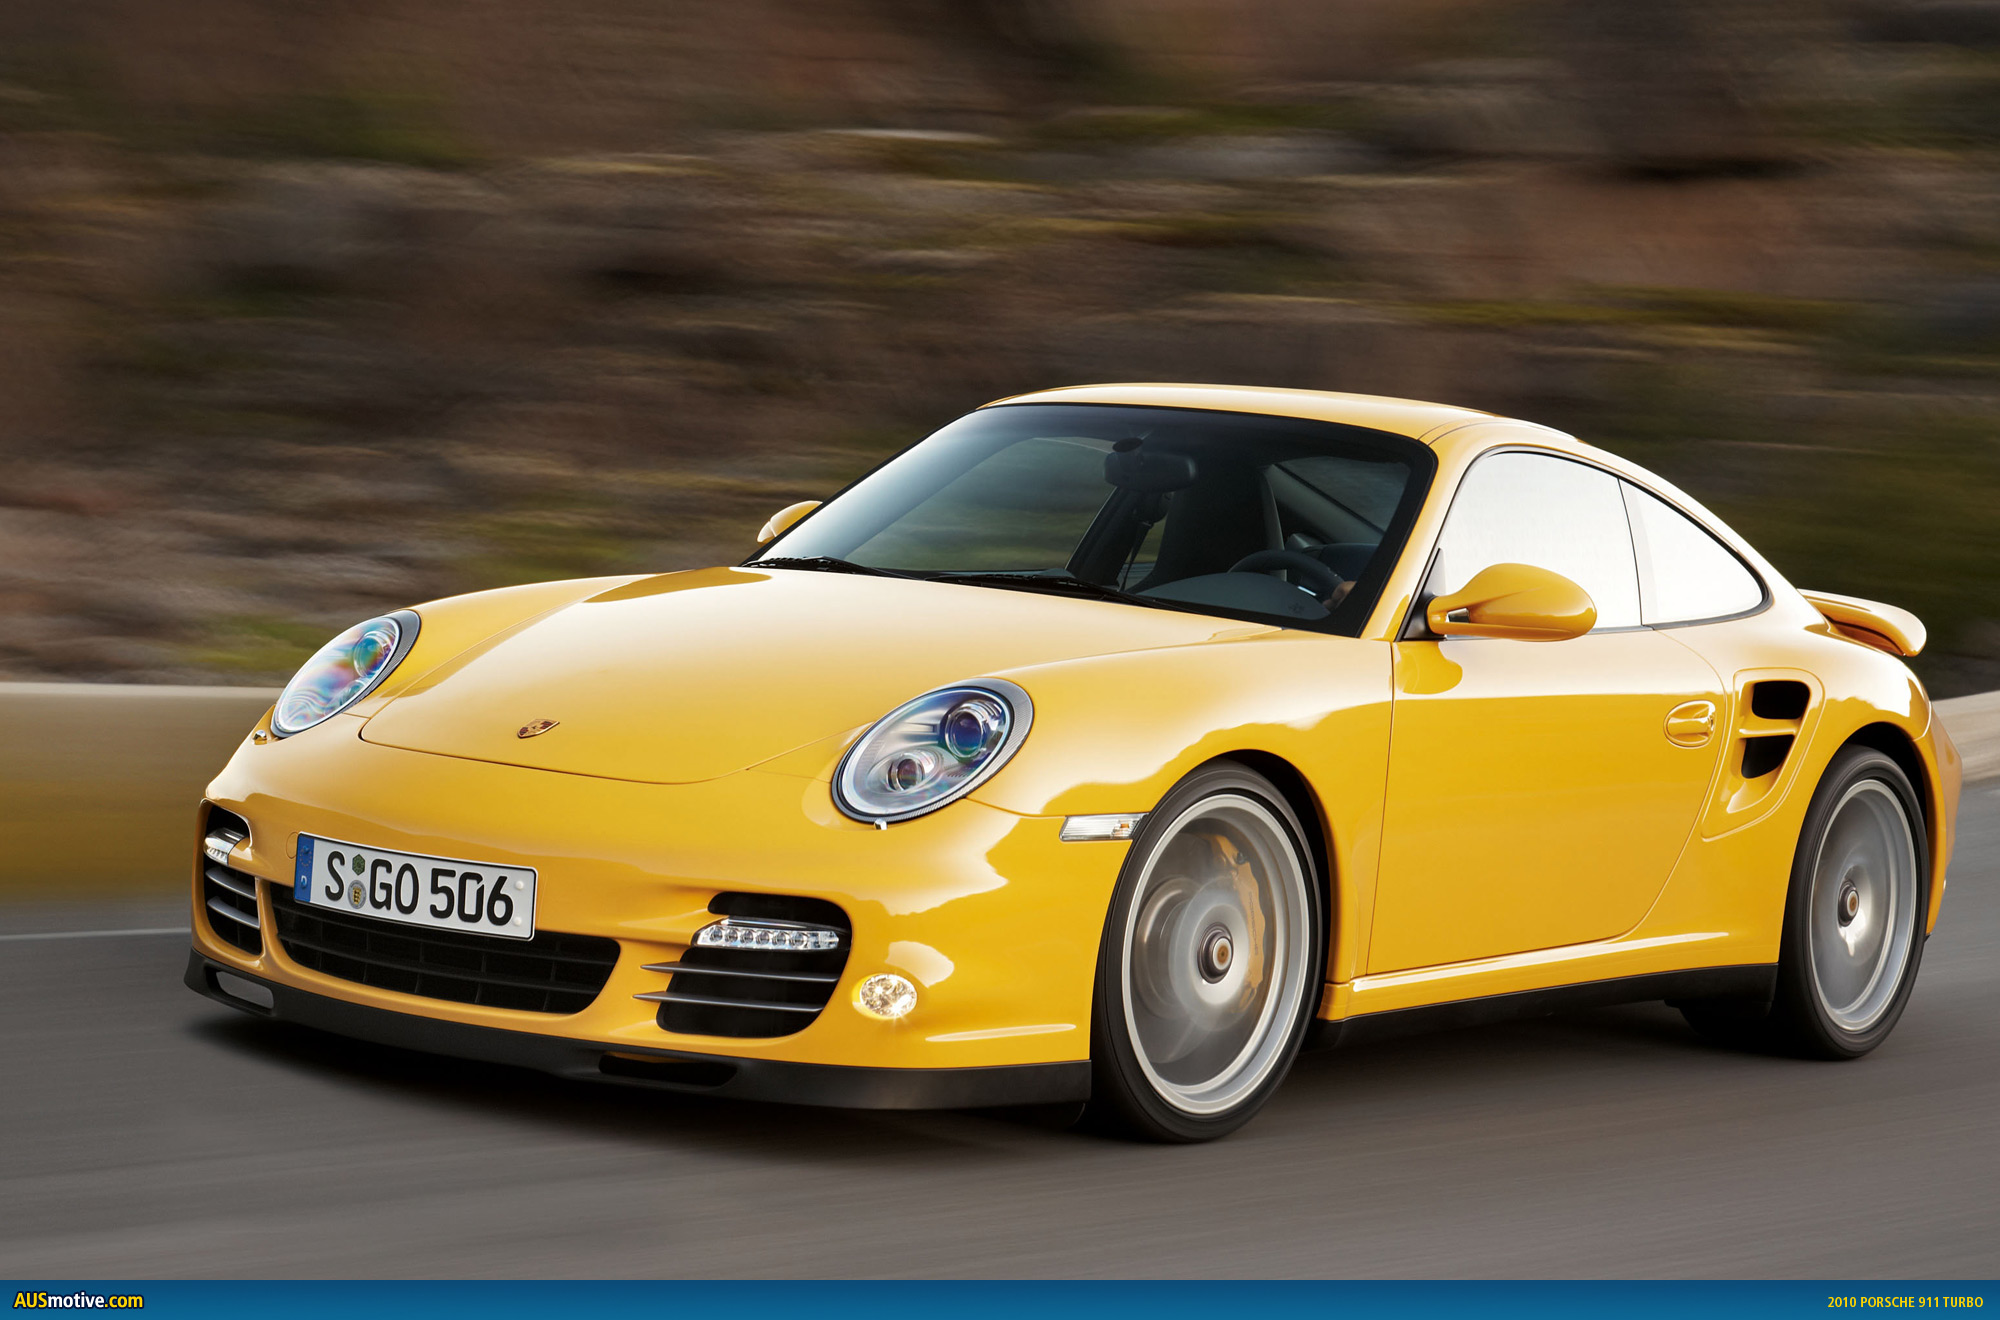 AUSmotive.com » 2010 Porsche 911 Turbo